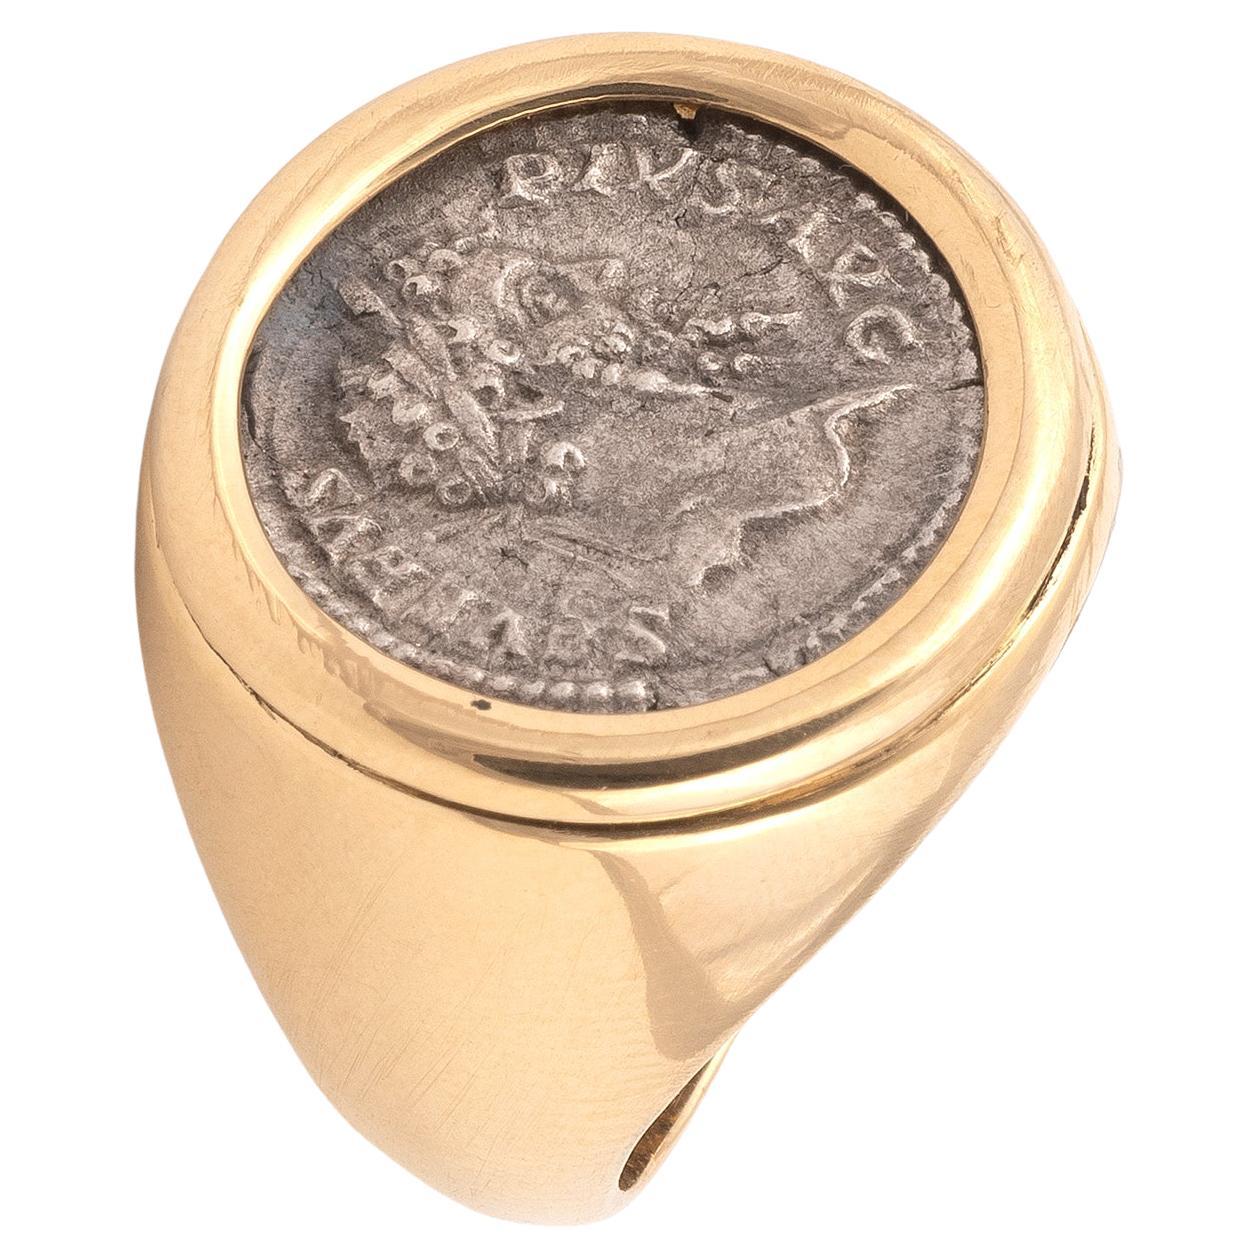 Gold and Silver Roman Settimio Severo Coin Ring